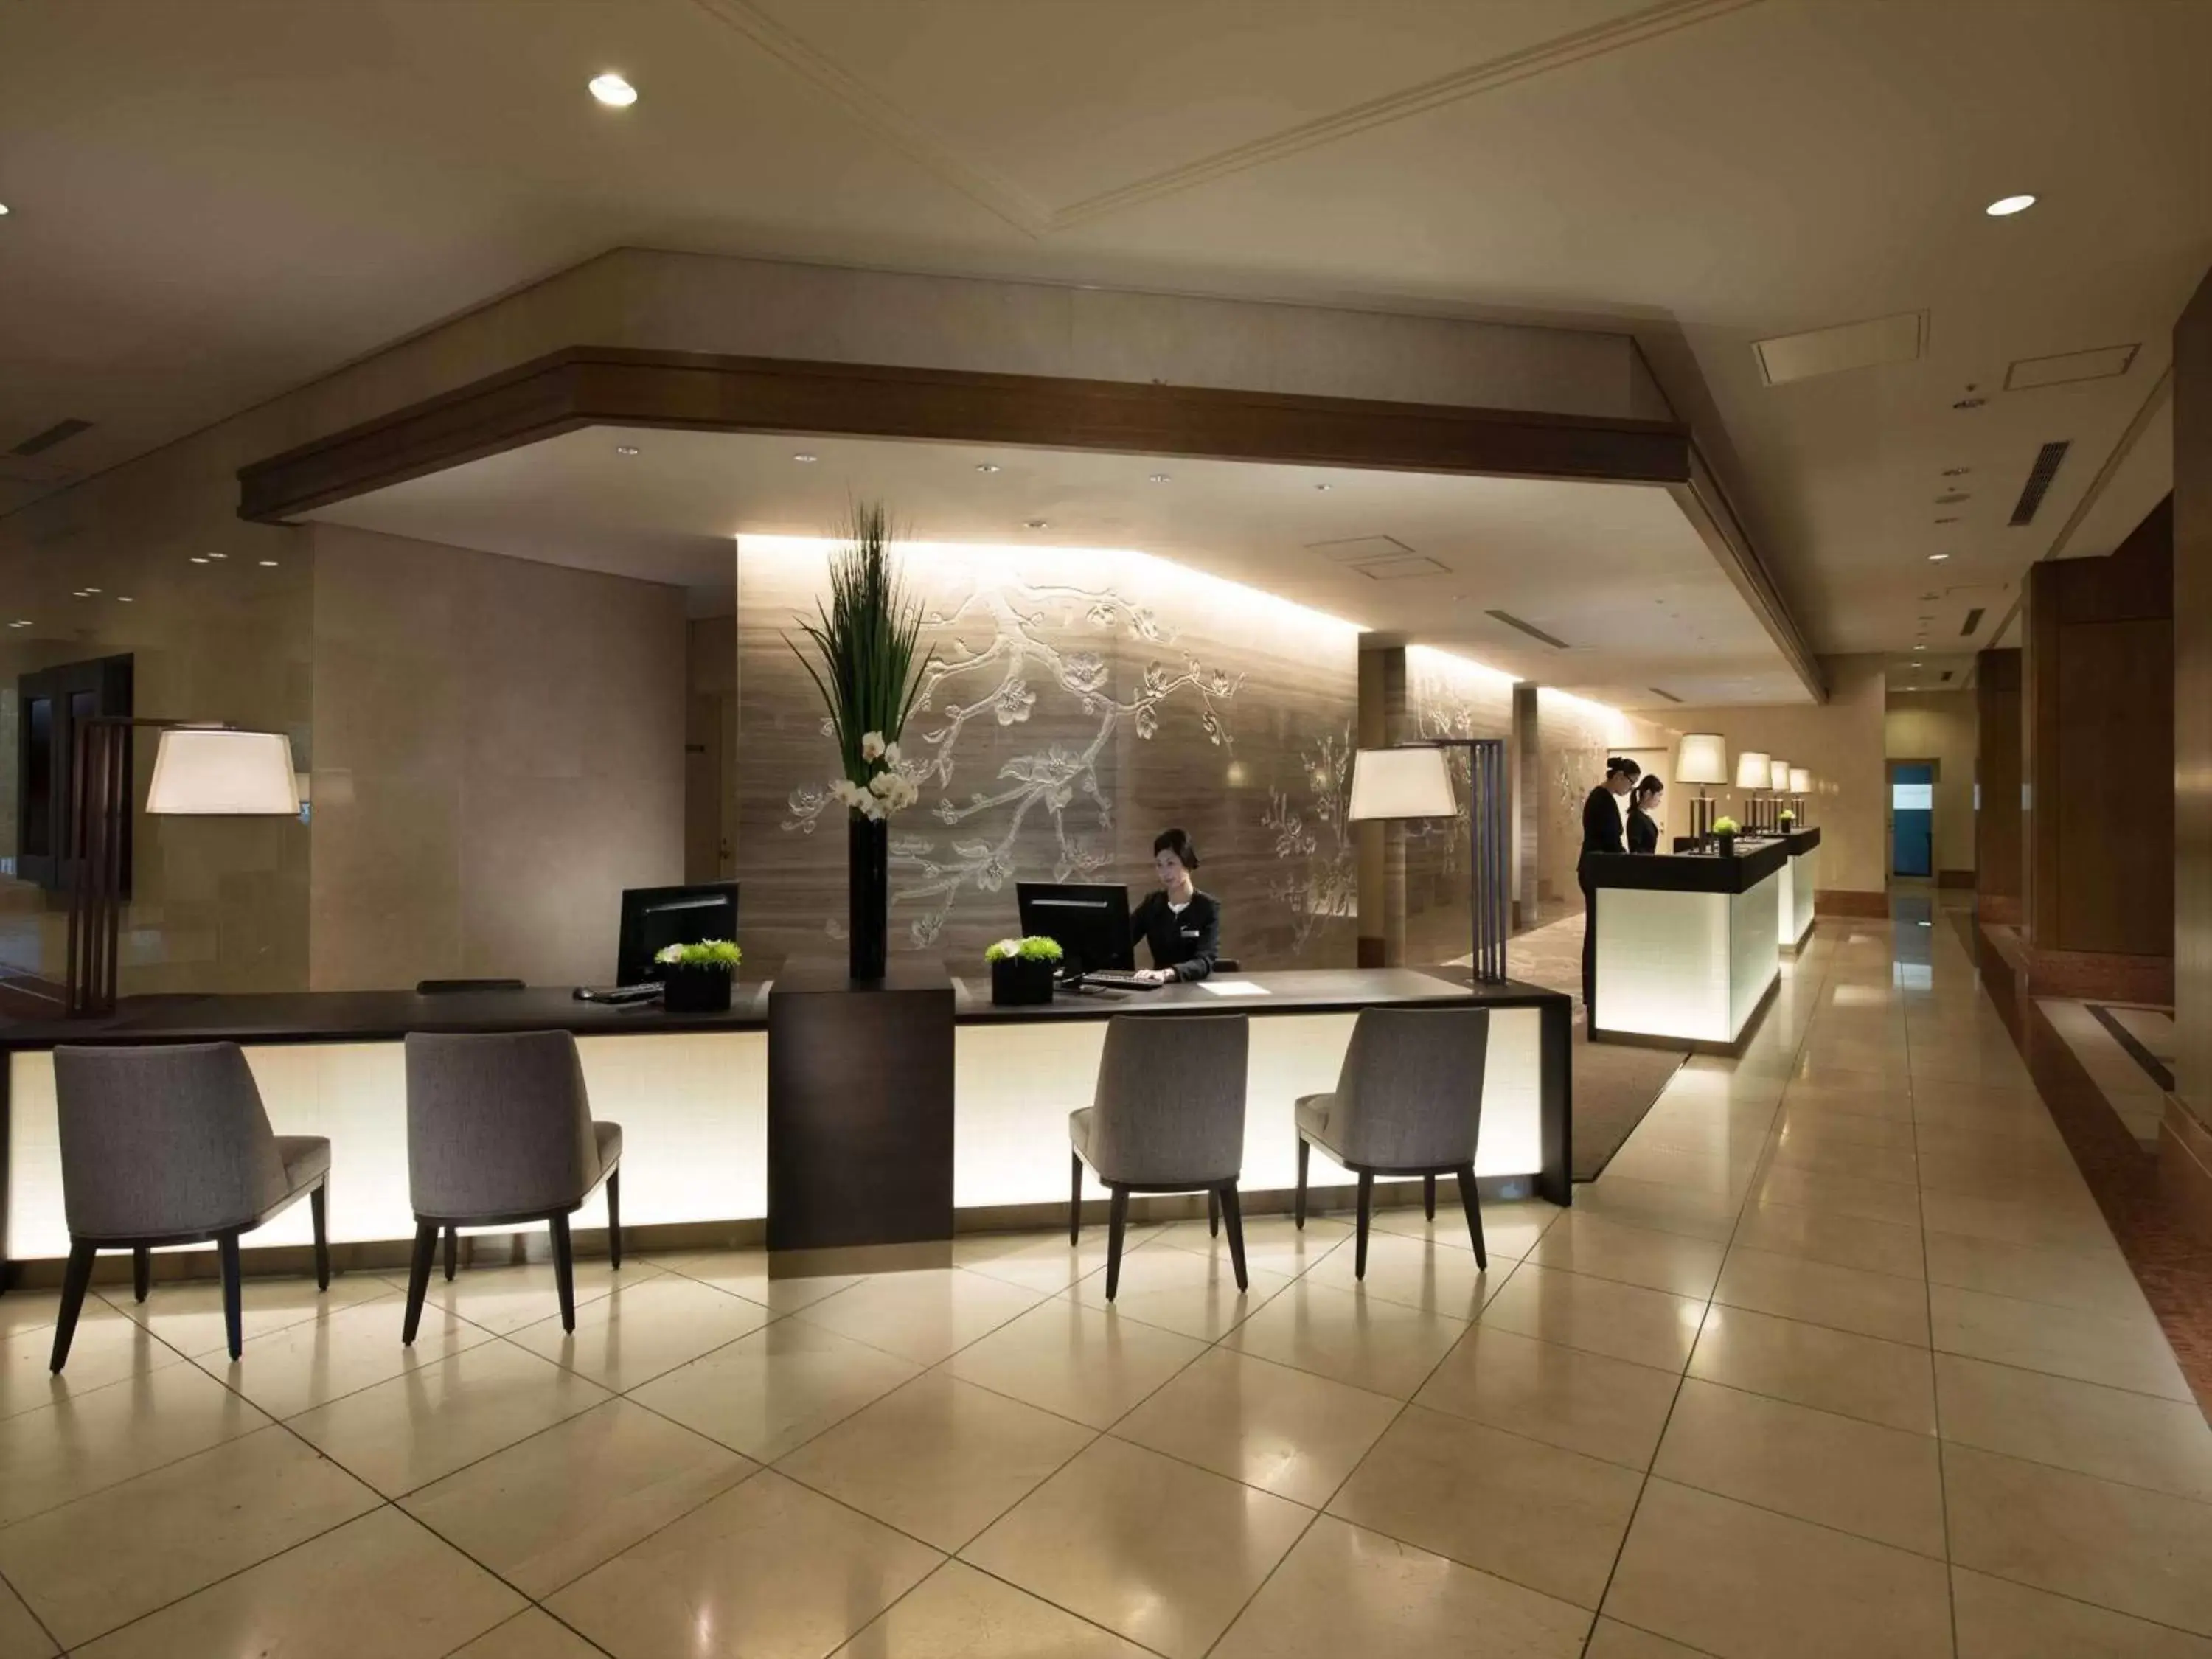 Lobby or reception in Hilton Odawara Resort & Spa